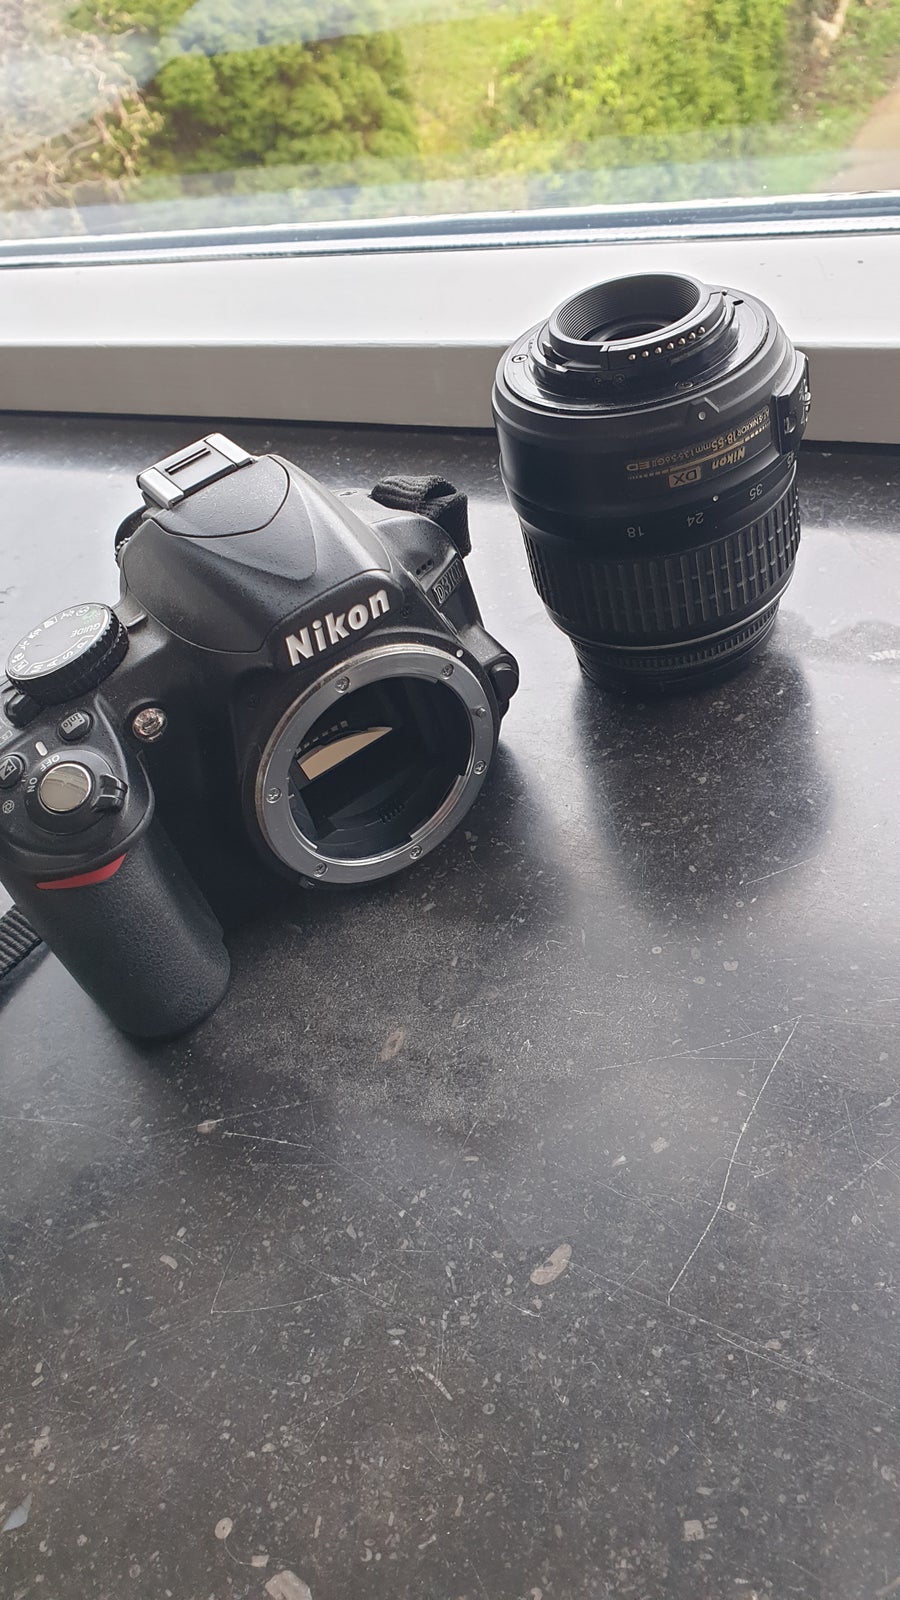 Zoom 18-55 mm, Nikon, AF-S DX NIKKOR ED 18-55 mm 1:3.5-5.6